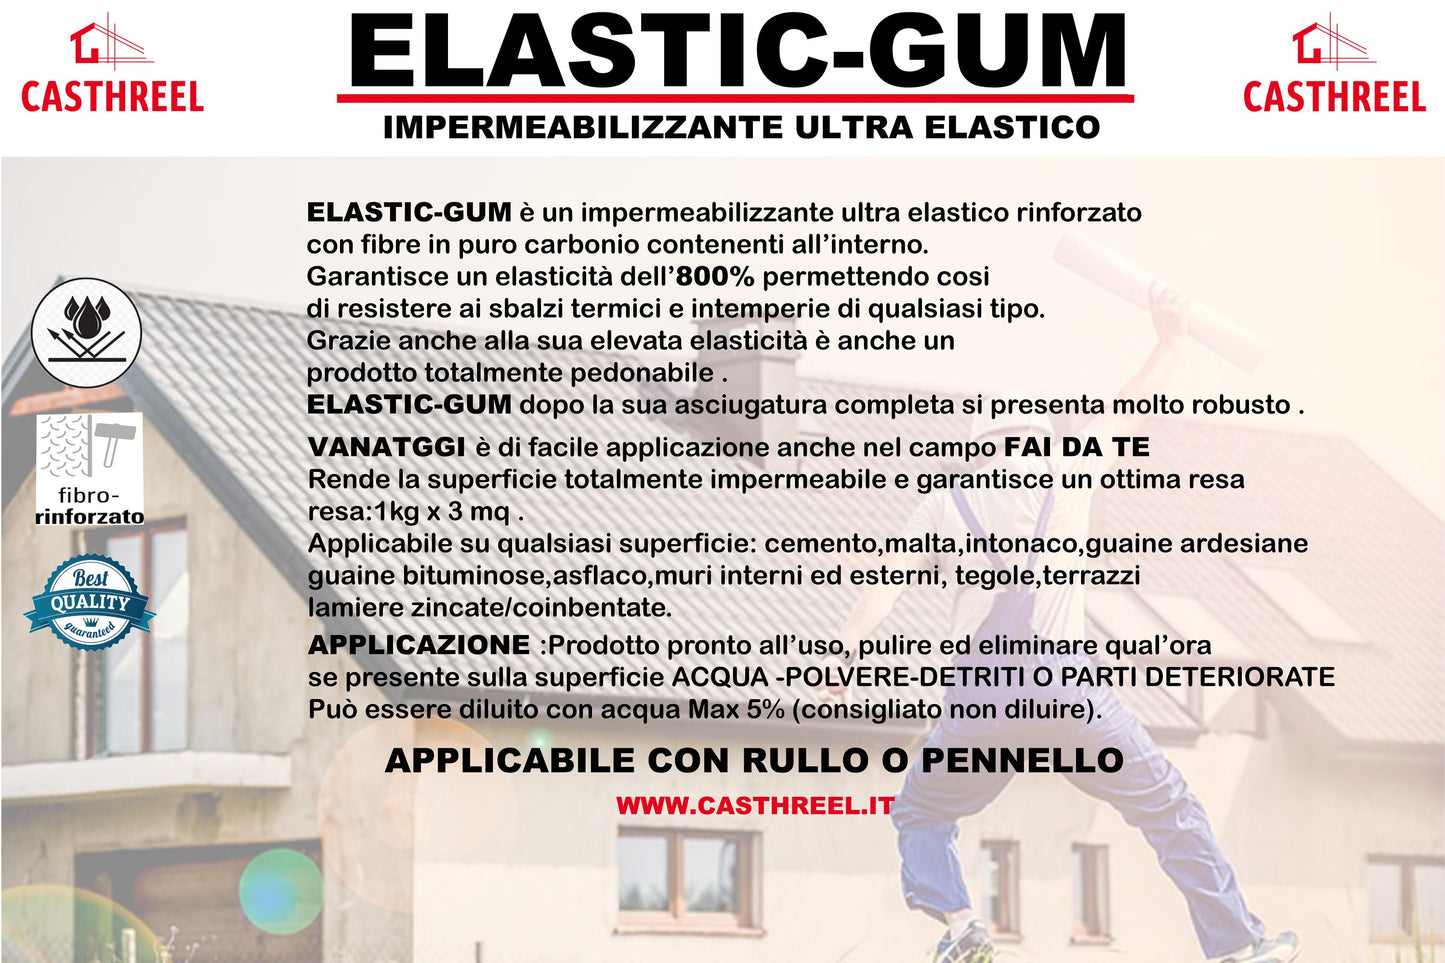 ELASTIC-GUM IMPERMEABILLIZZANTE ULTRA ELASTICO-TOP DI GAMMA